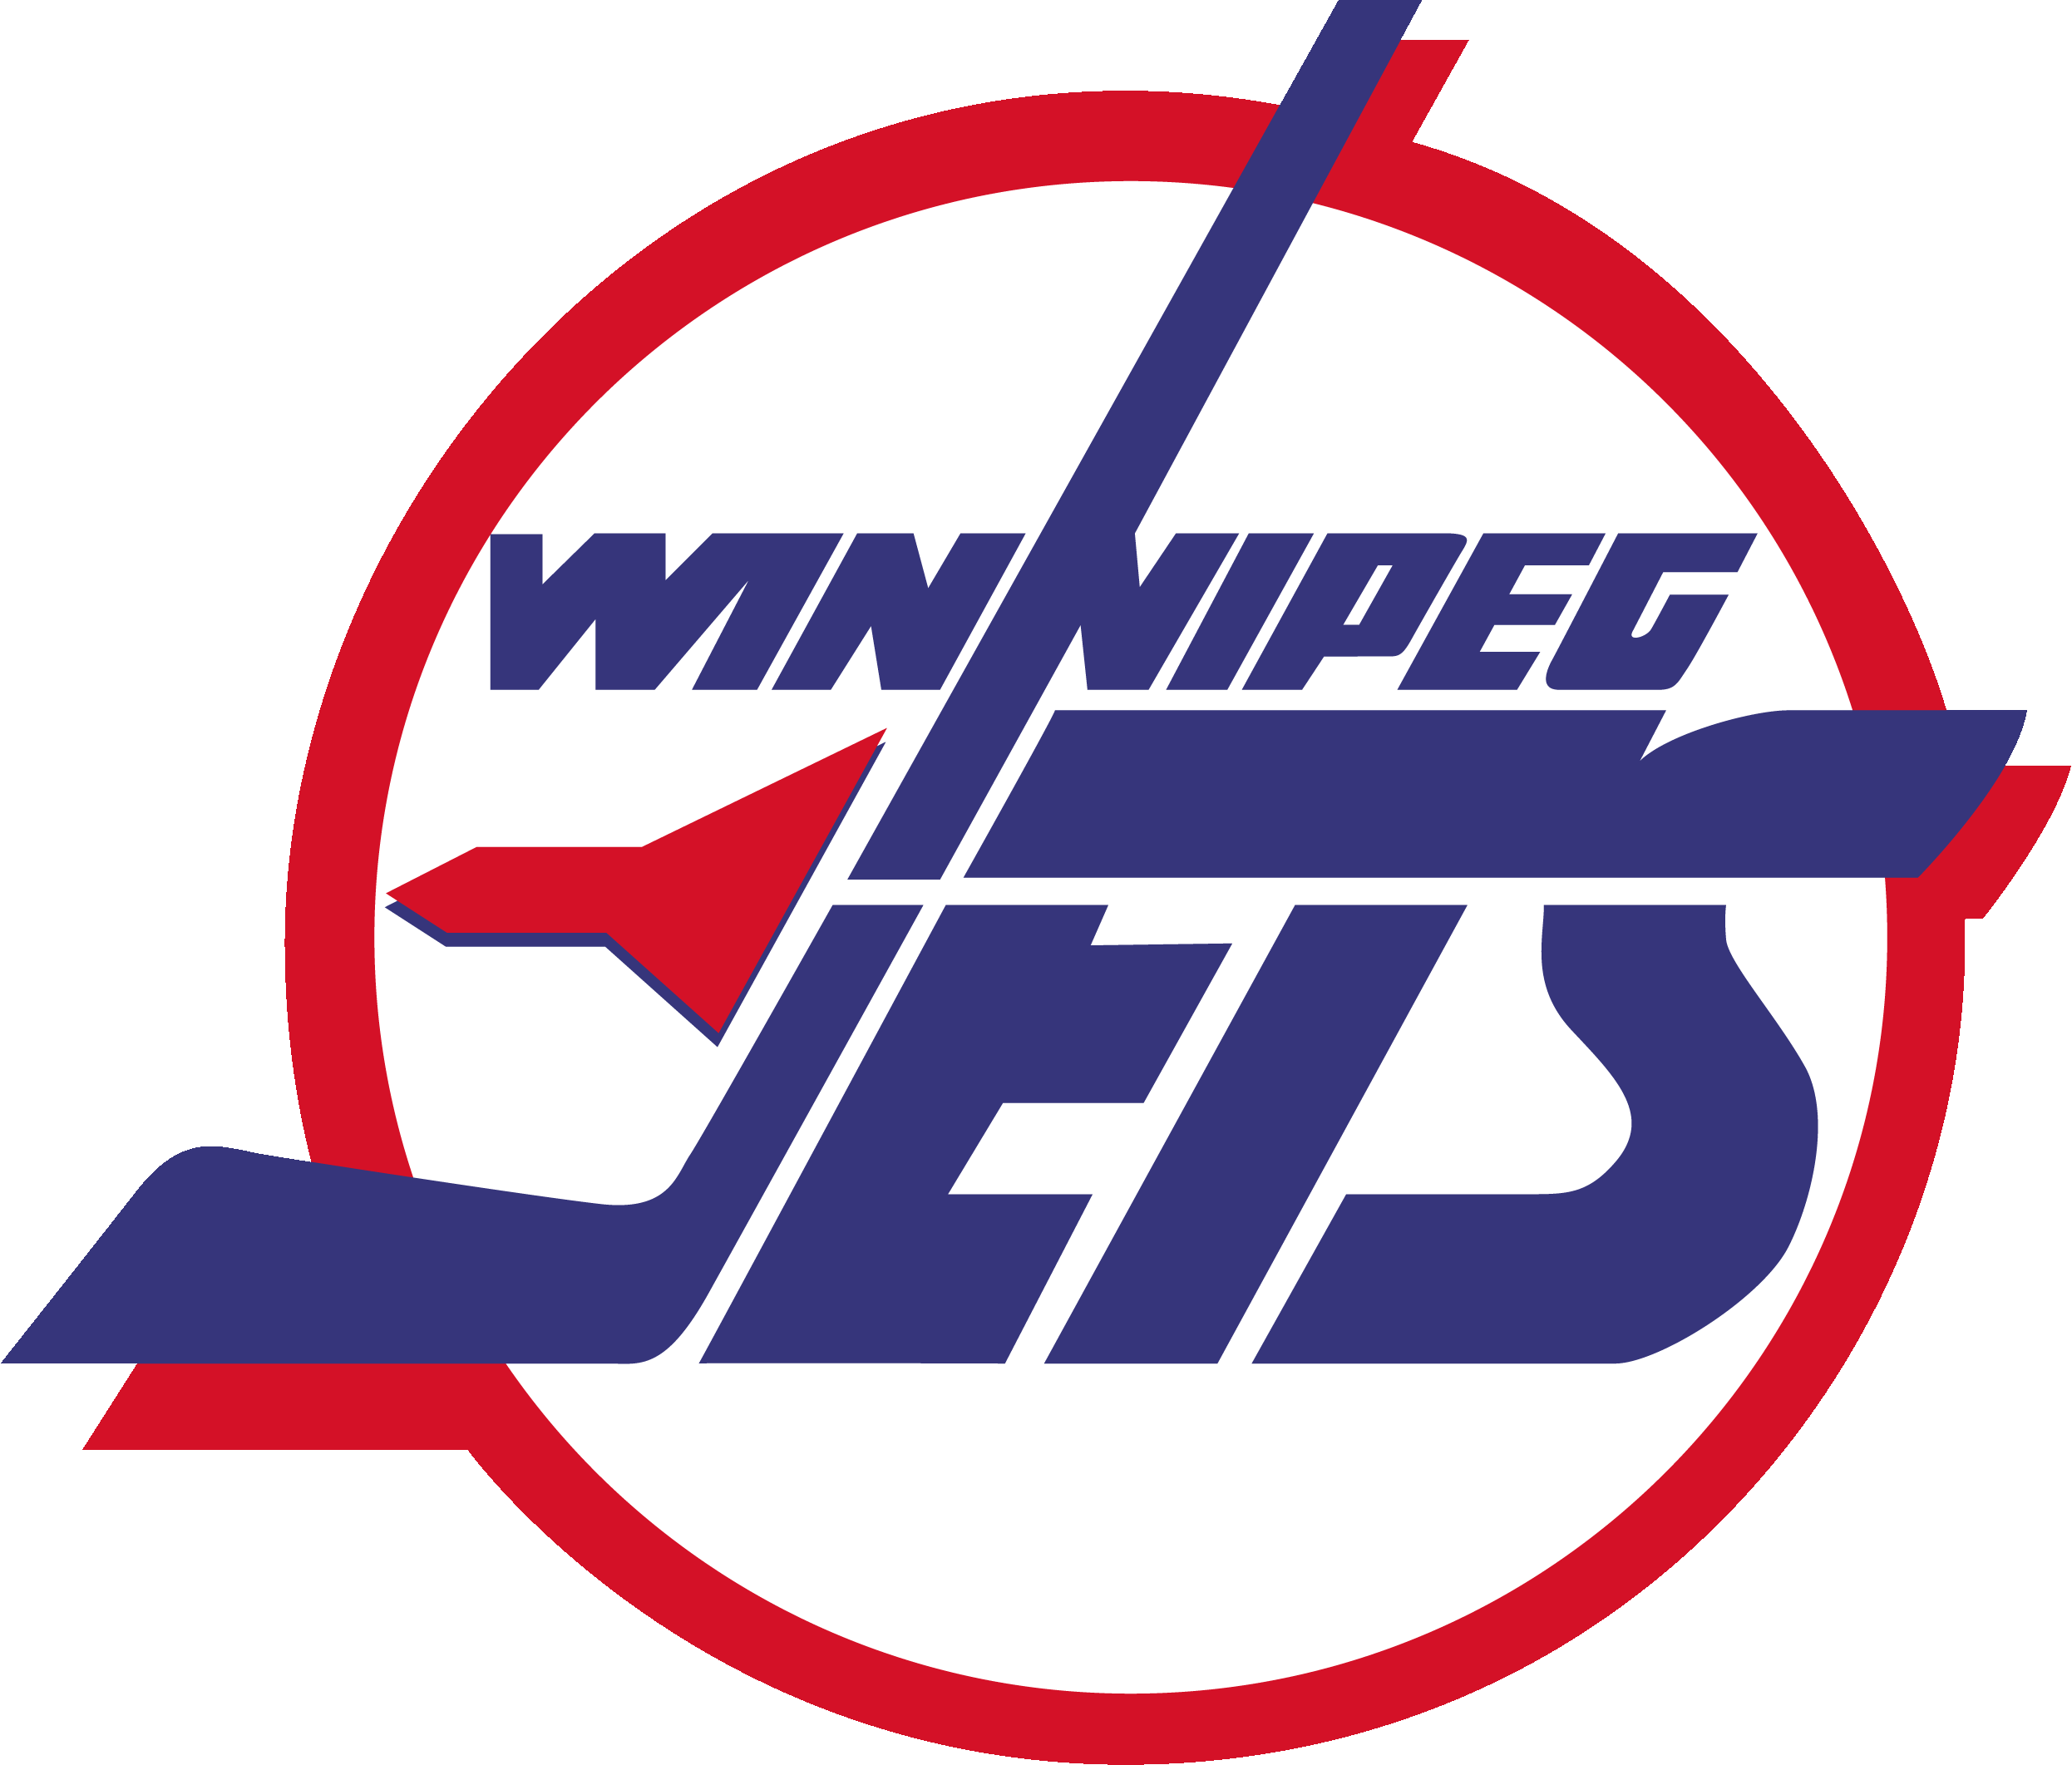 Winnipeg Jet NHL Logo - winnipeg jets logos. ololoshenka. Hockey logos, NHL, Nhl logos